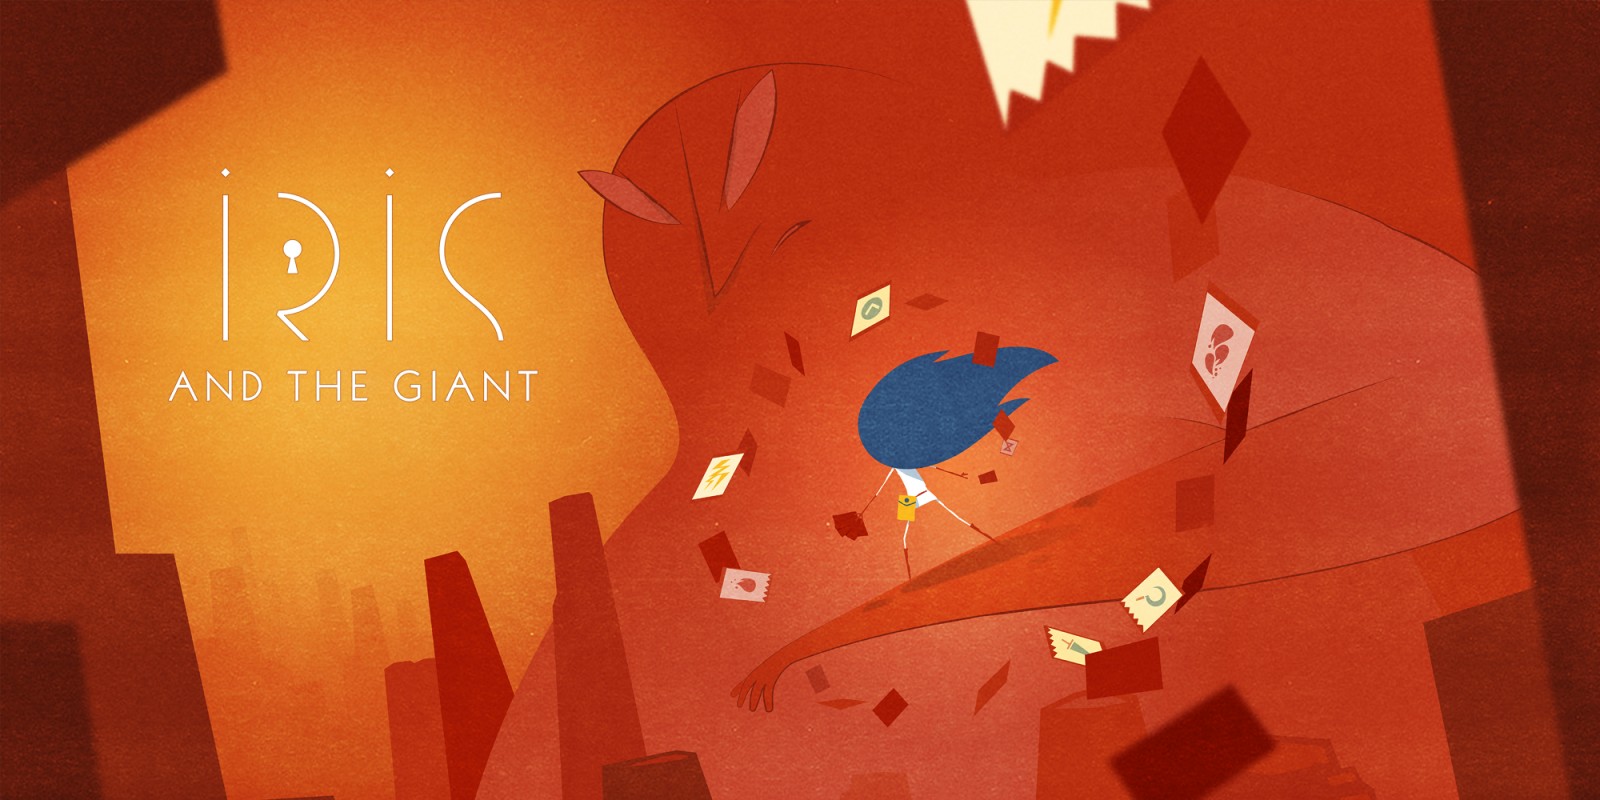 В GOG стартовала бесплатная раздача игры Iris and the Giant